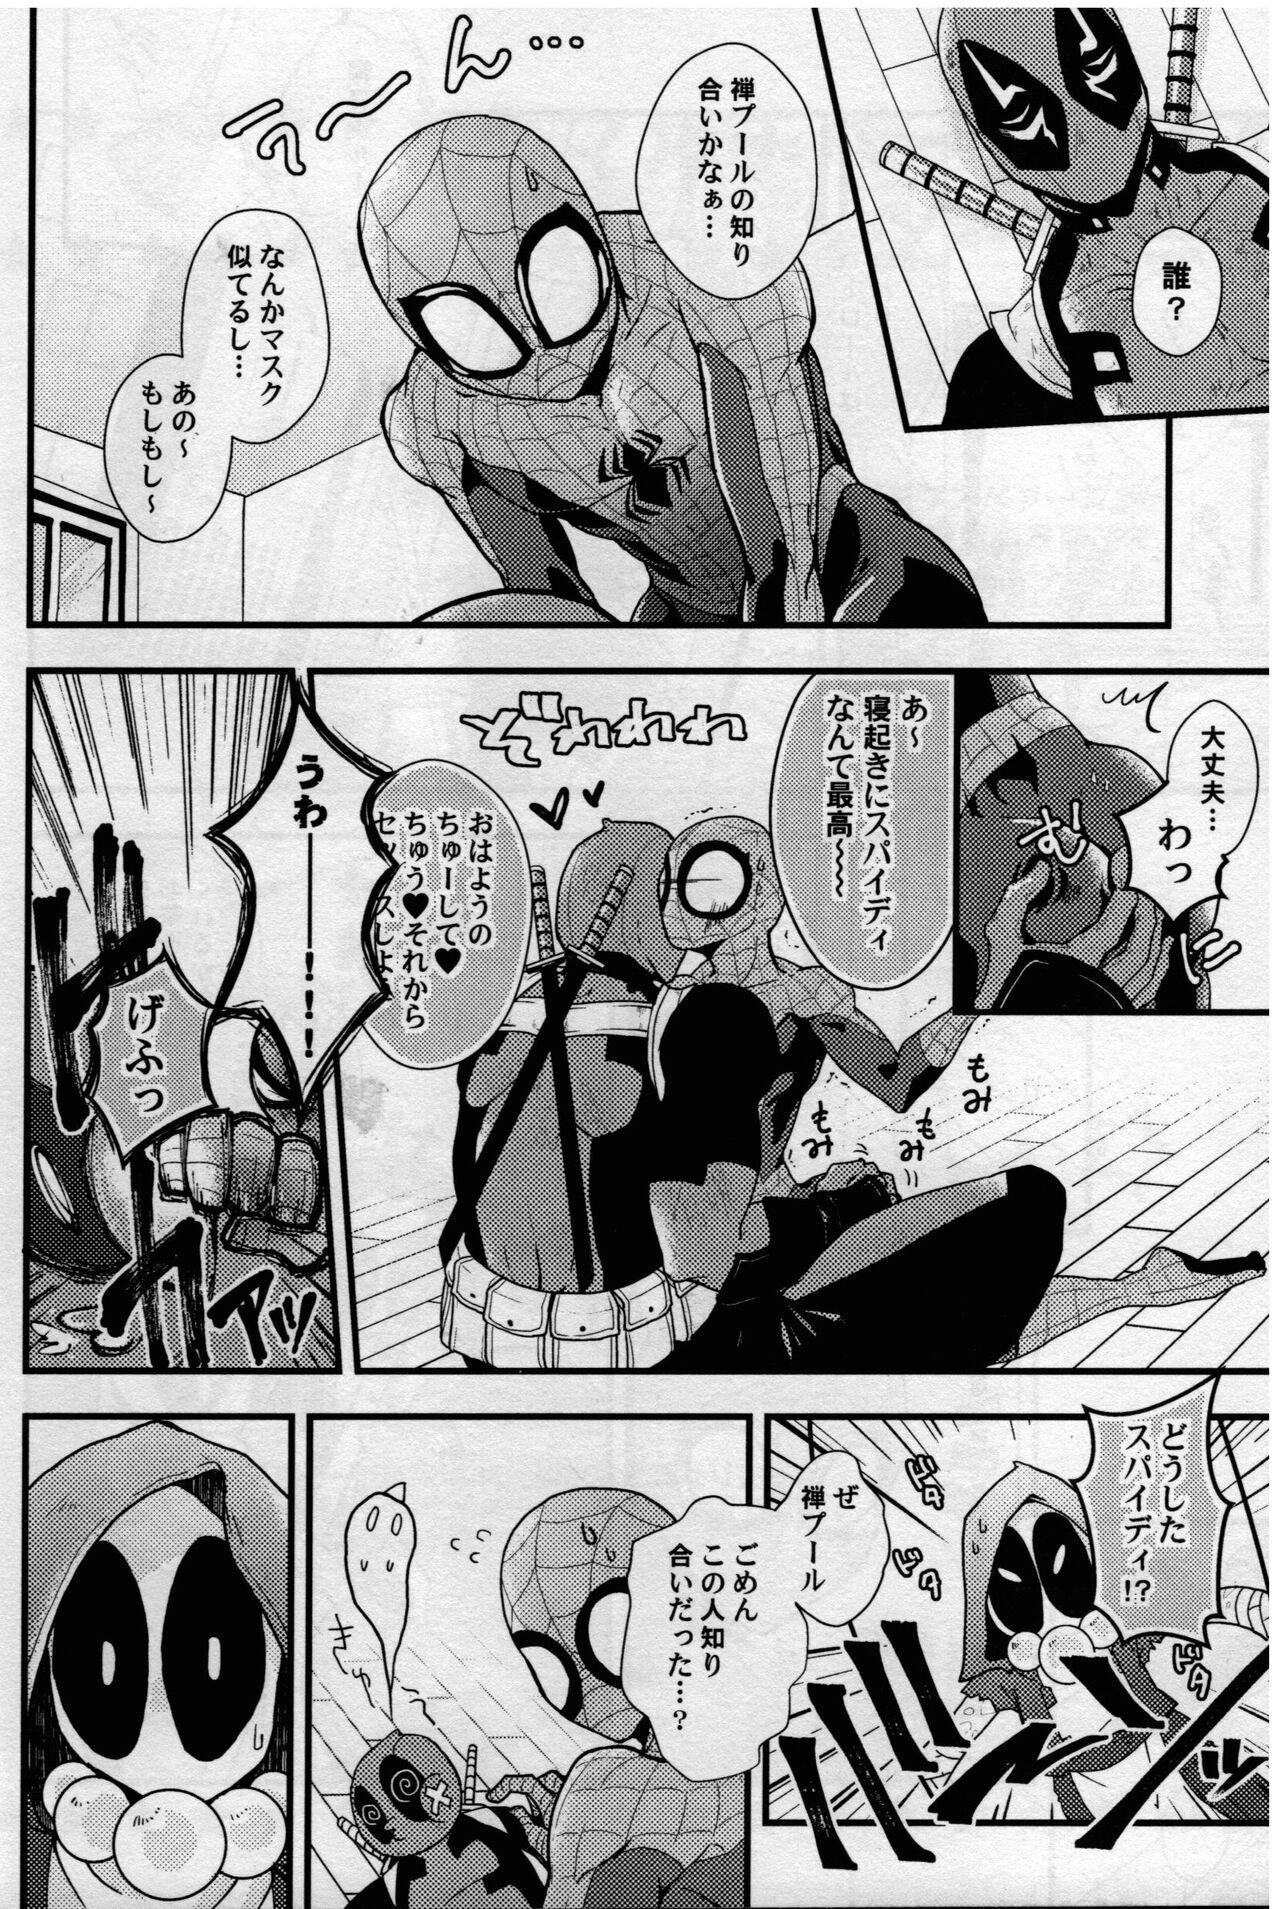 Swingers maruchiba → suraba → zu maruchibasurabazu - Spider man Korean - Page 5